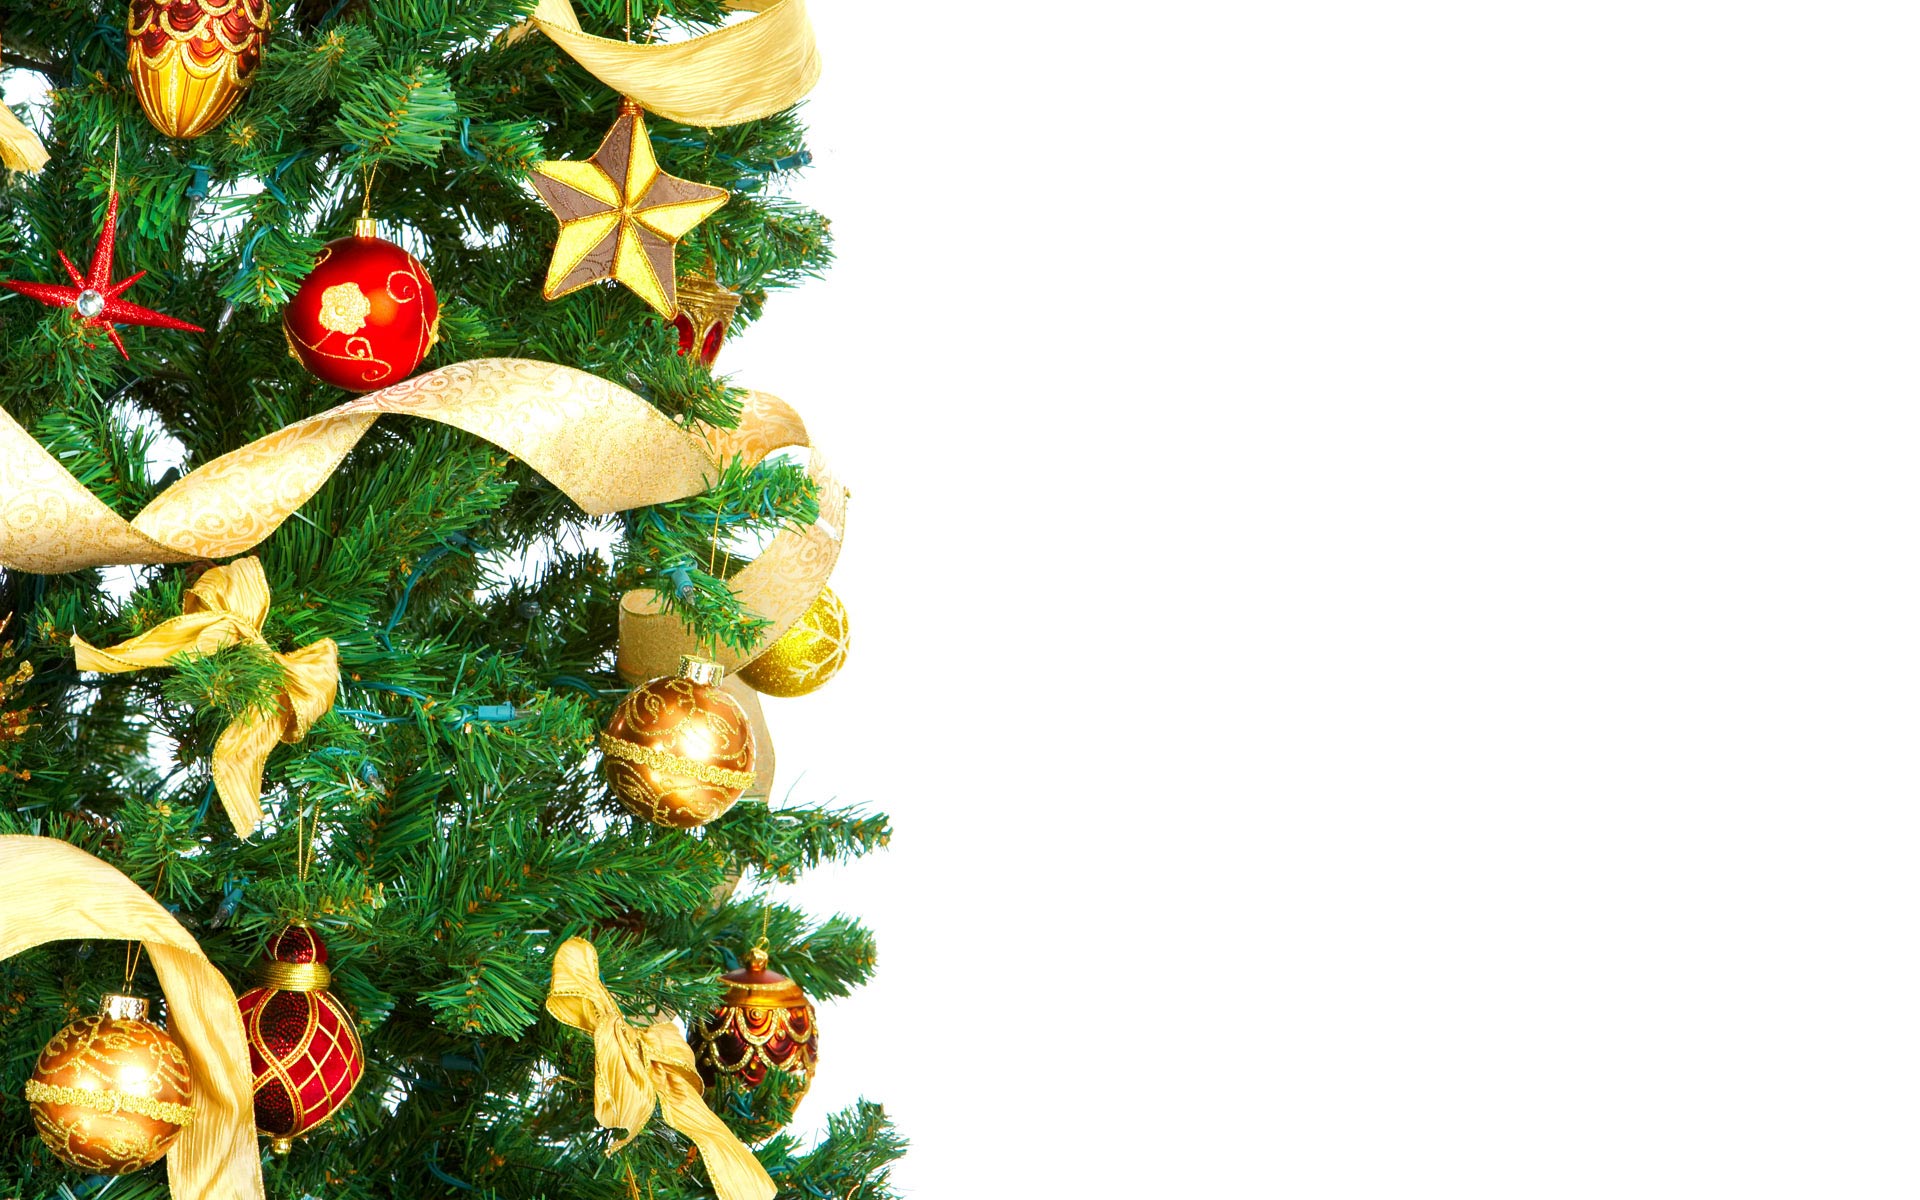 Regali Di Natale A Km 0.Alberi A Km 0 E Luci A Led Quando Il Natale Strizza L Occhio All Ambiente Giornale Di Sicilia